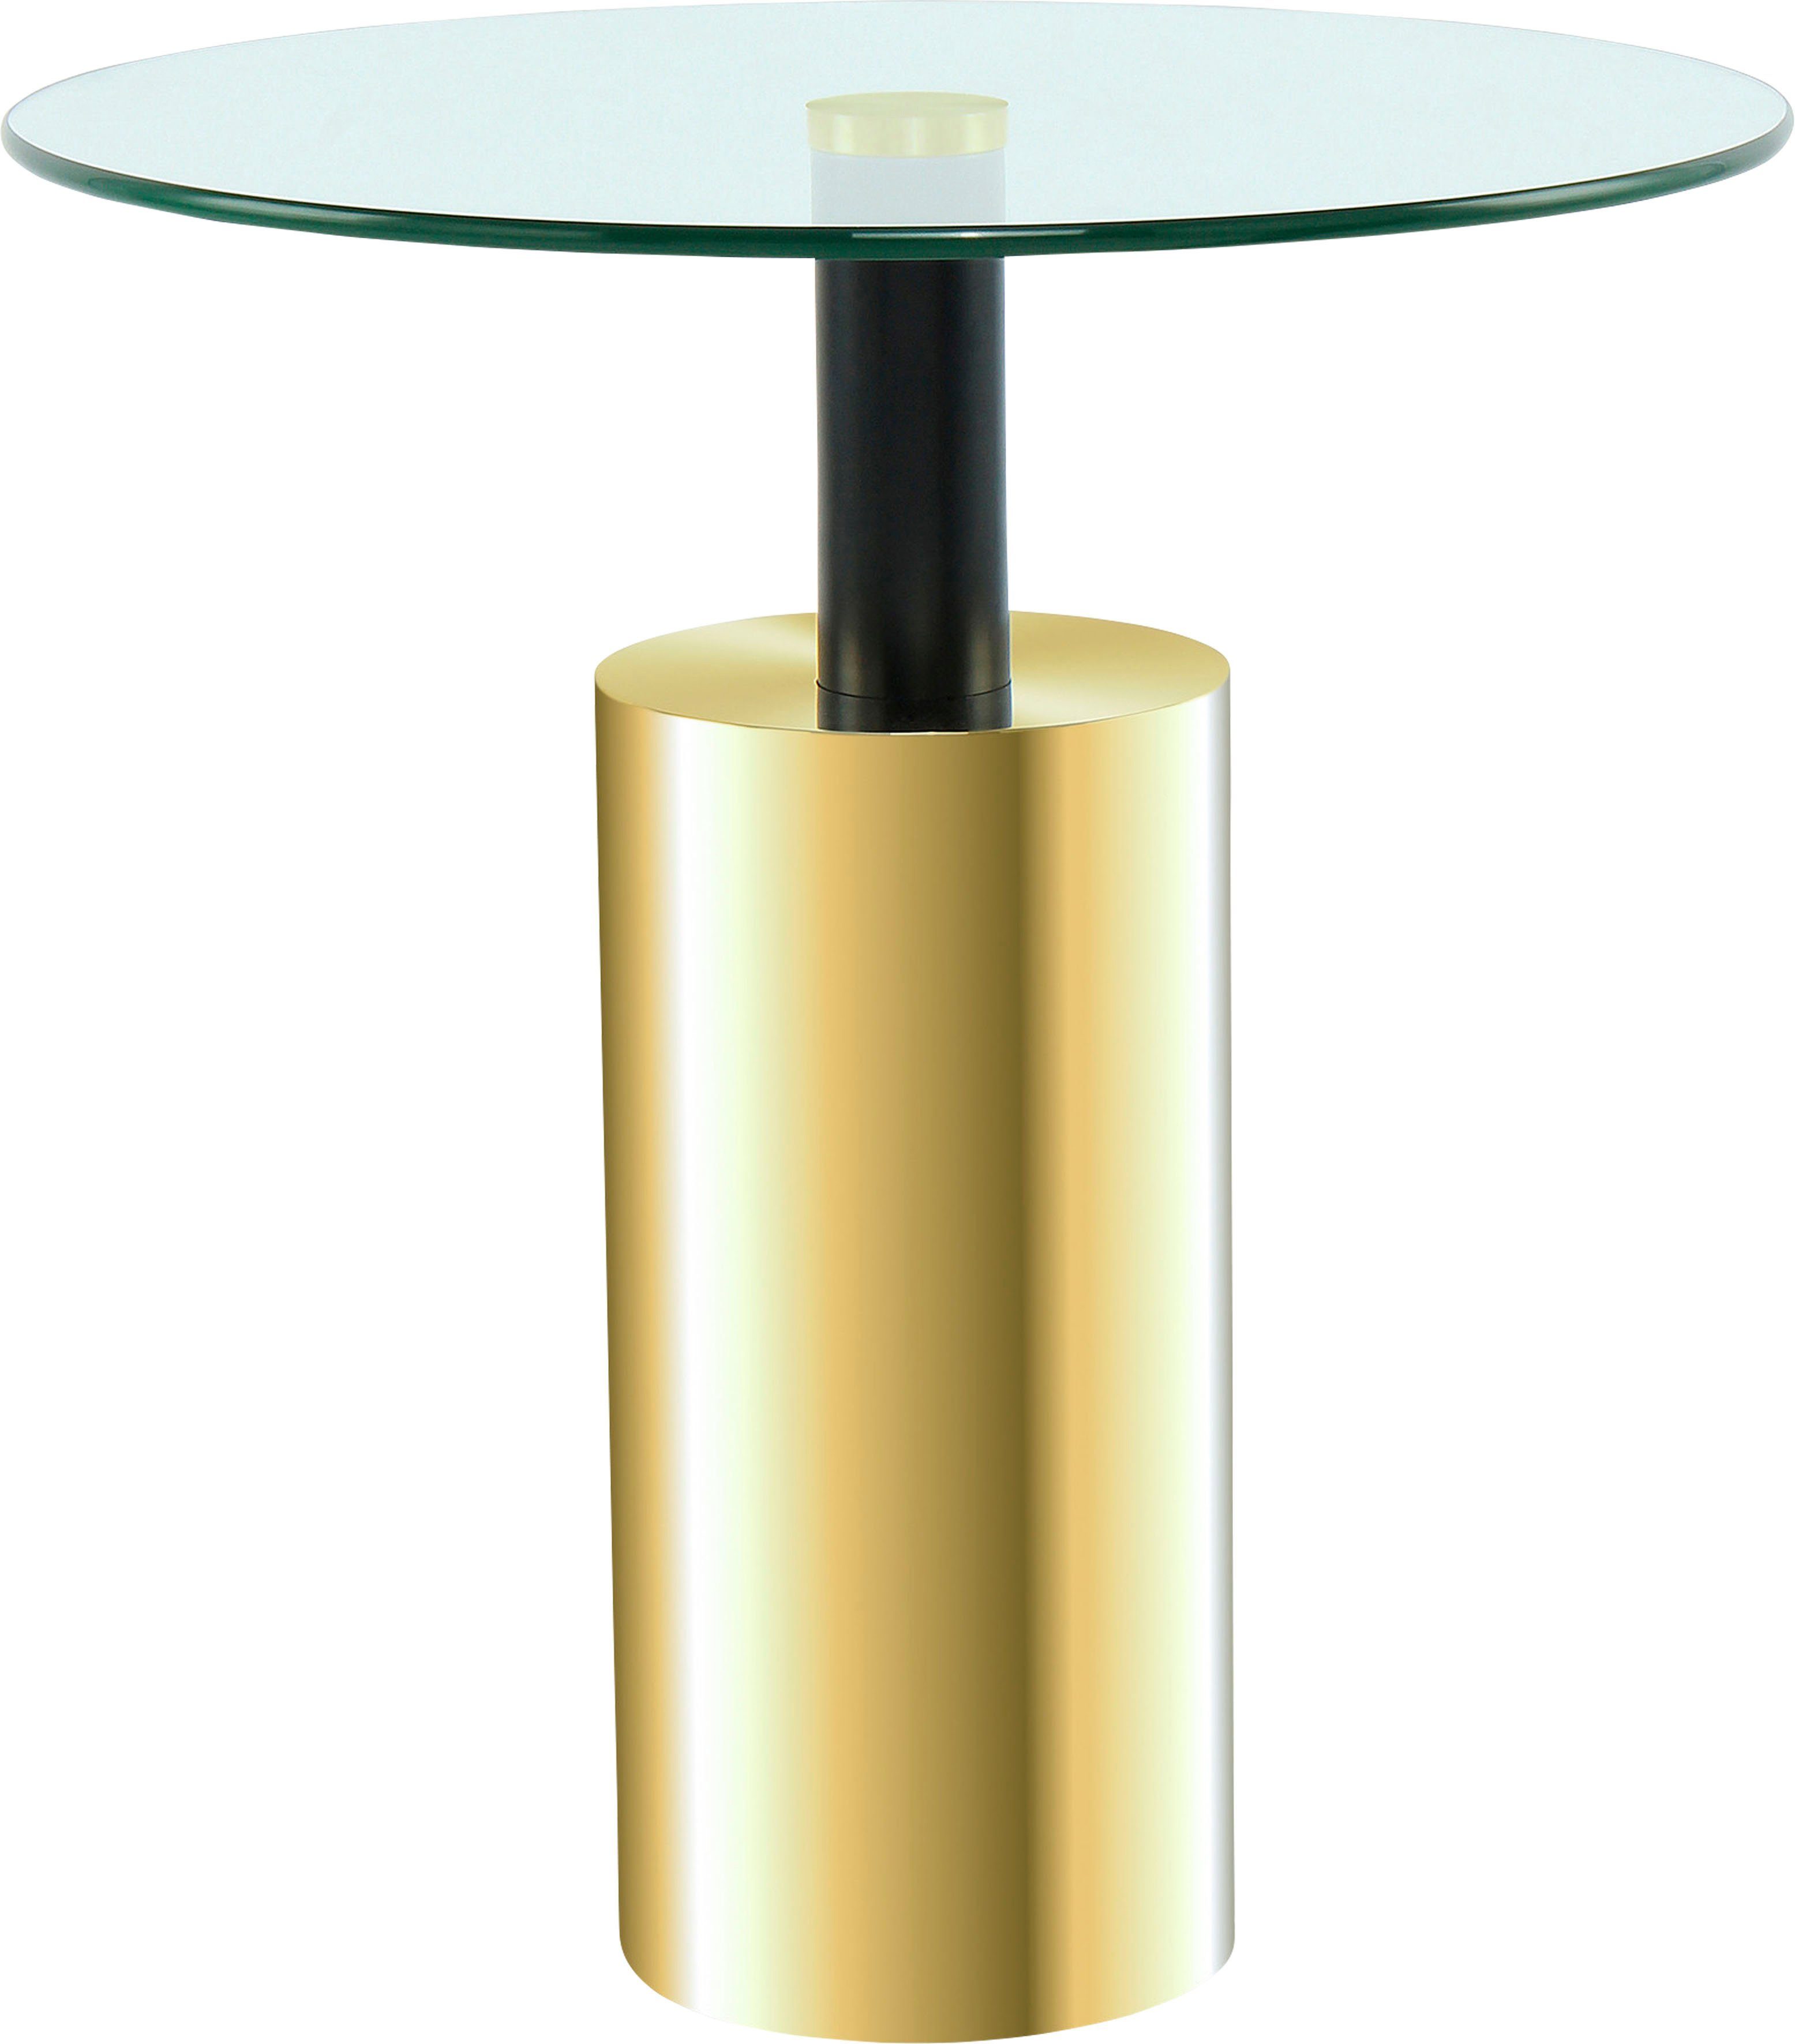 Kayoom Beistelltisch Beistelltisch Rosanna 525, Runde Tischplatte, edles Design, zeitlose Farben, Sockel: Ø 15 cm klar | gold